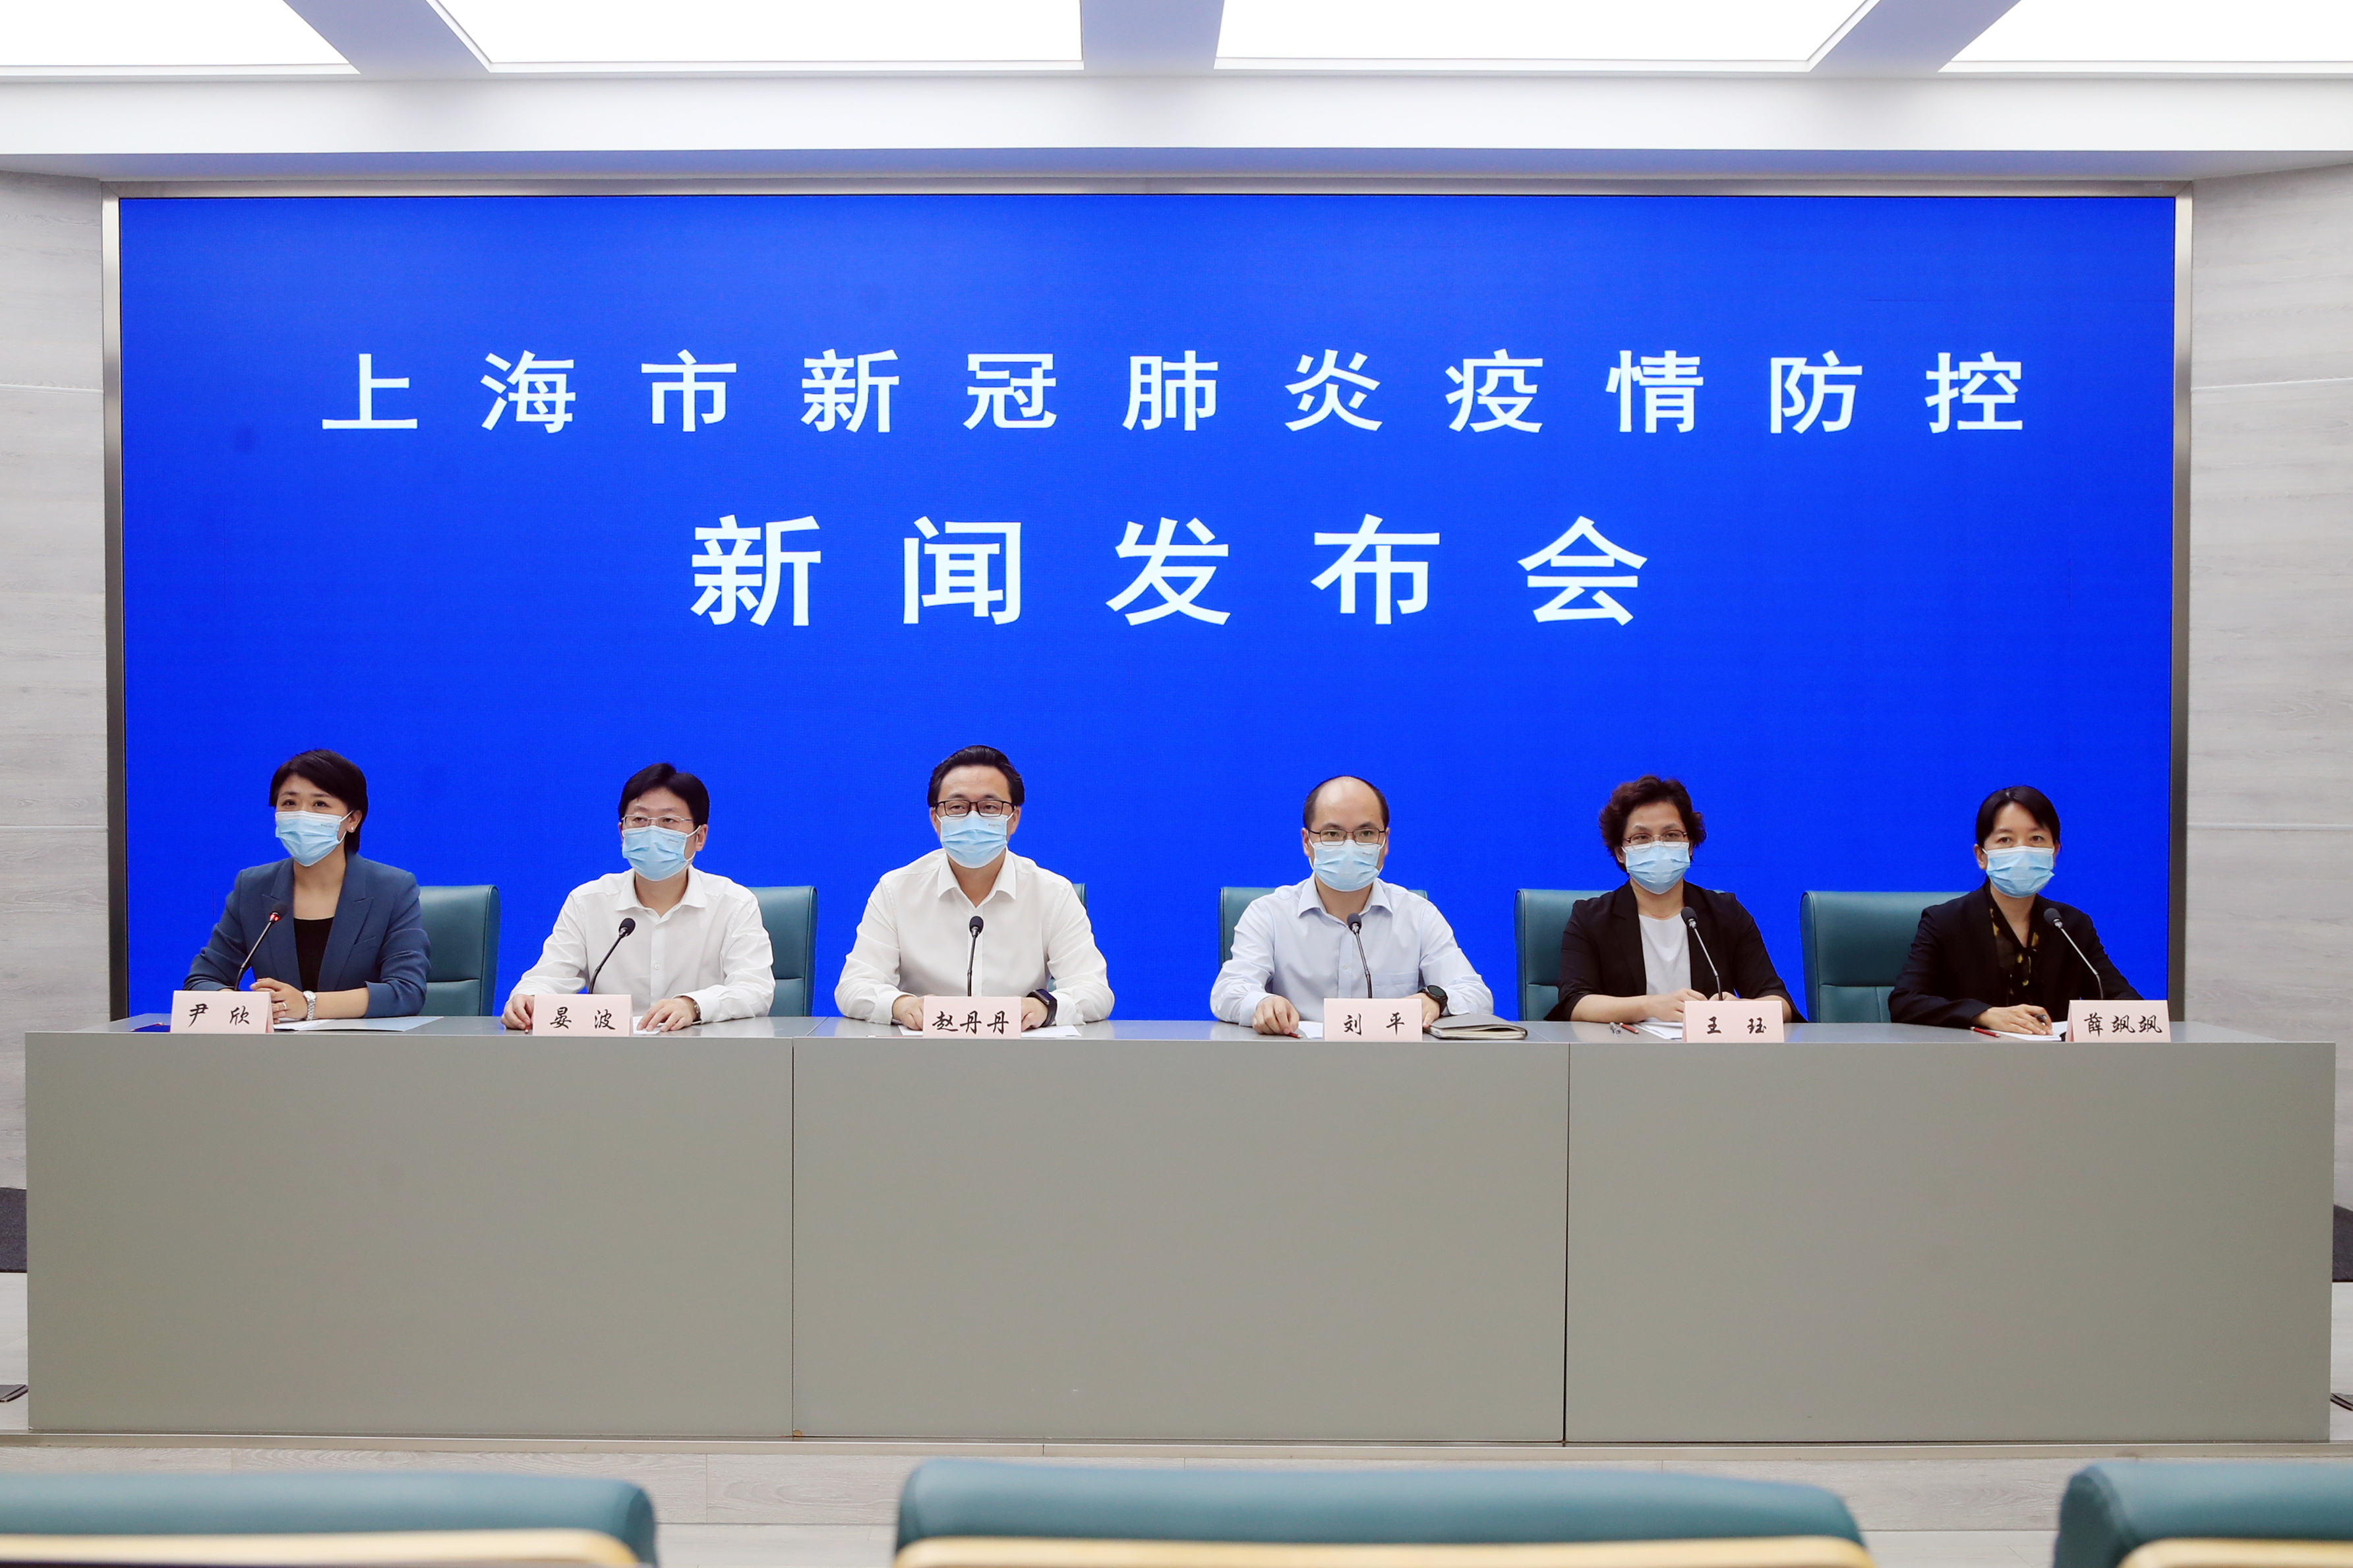 7月20日上海通报新冠肺炎防控情况